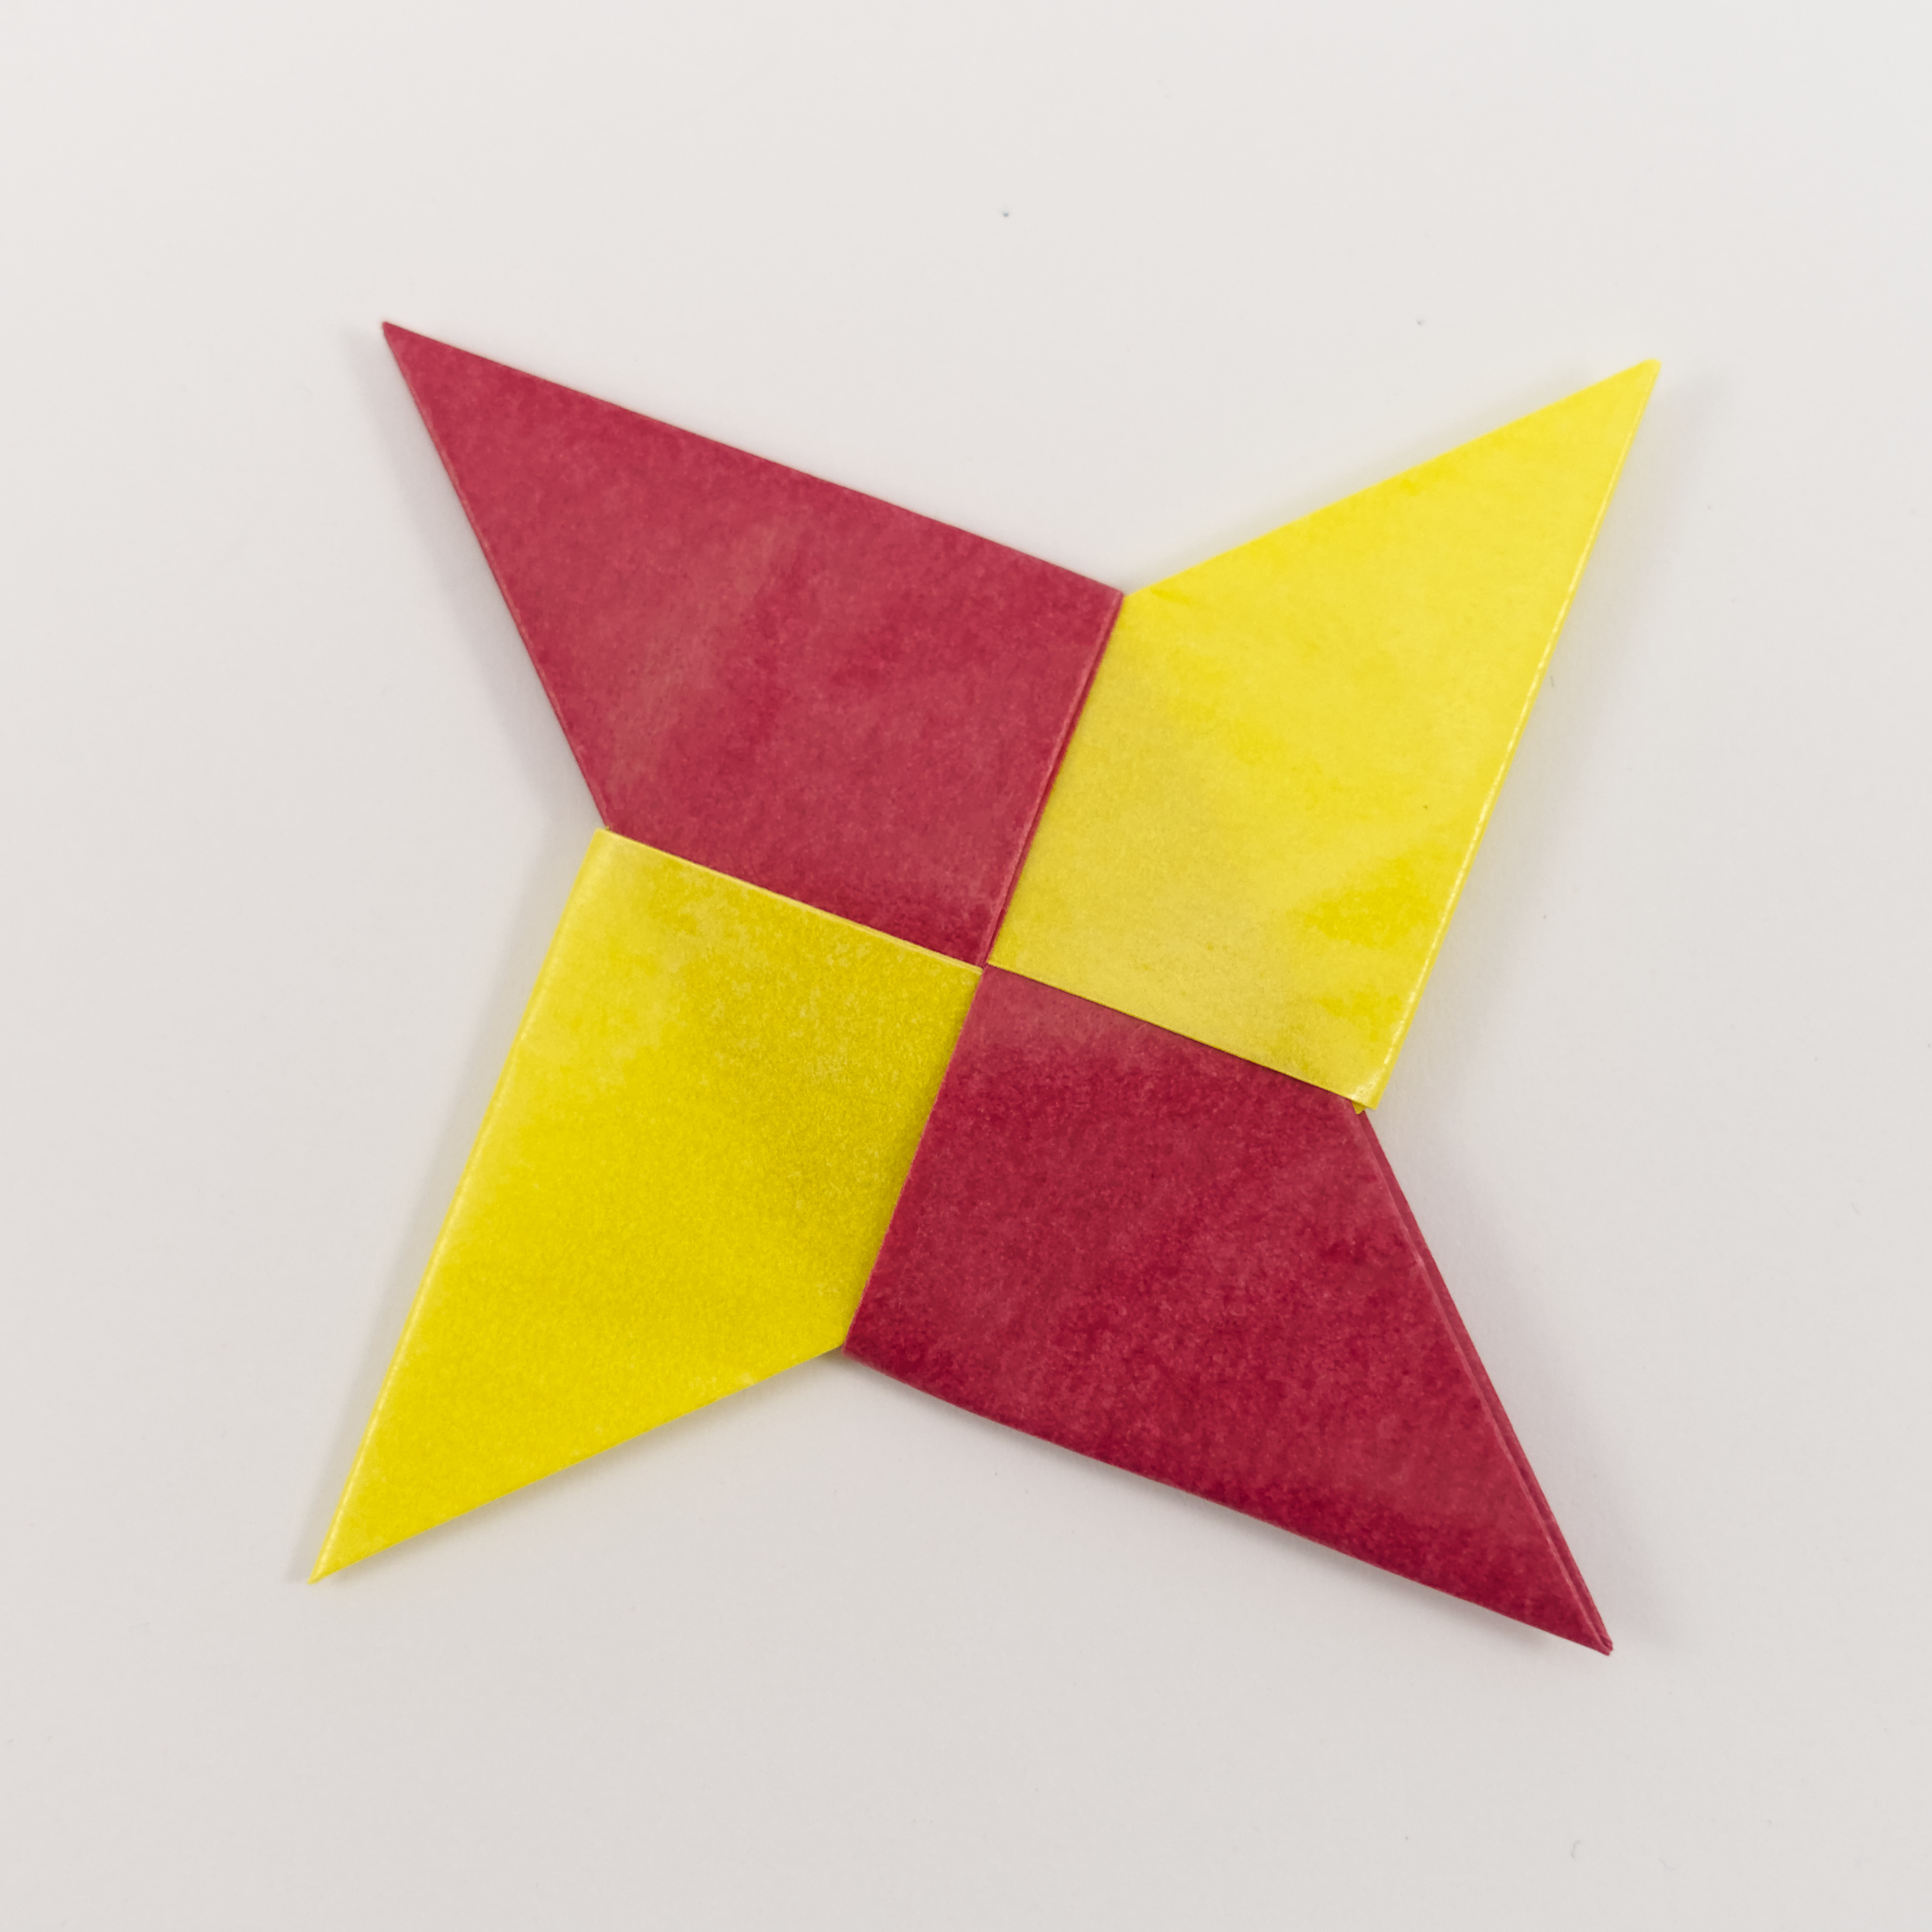 Traditional Ninja Star - Origami by Michał Kosmulski